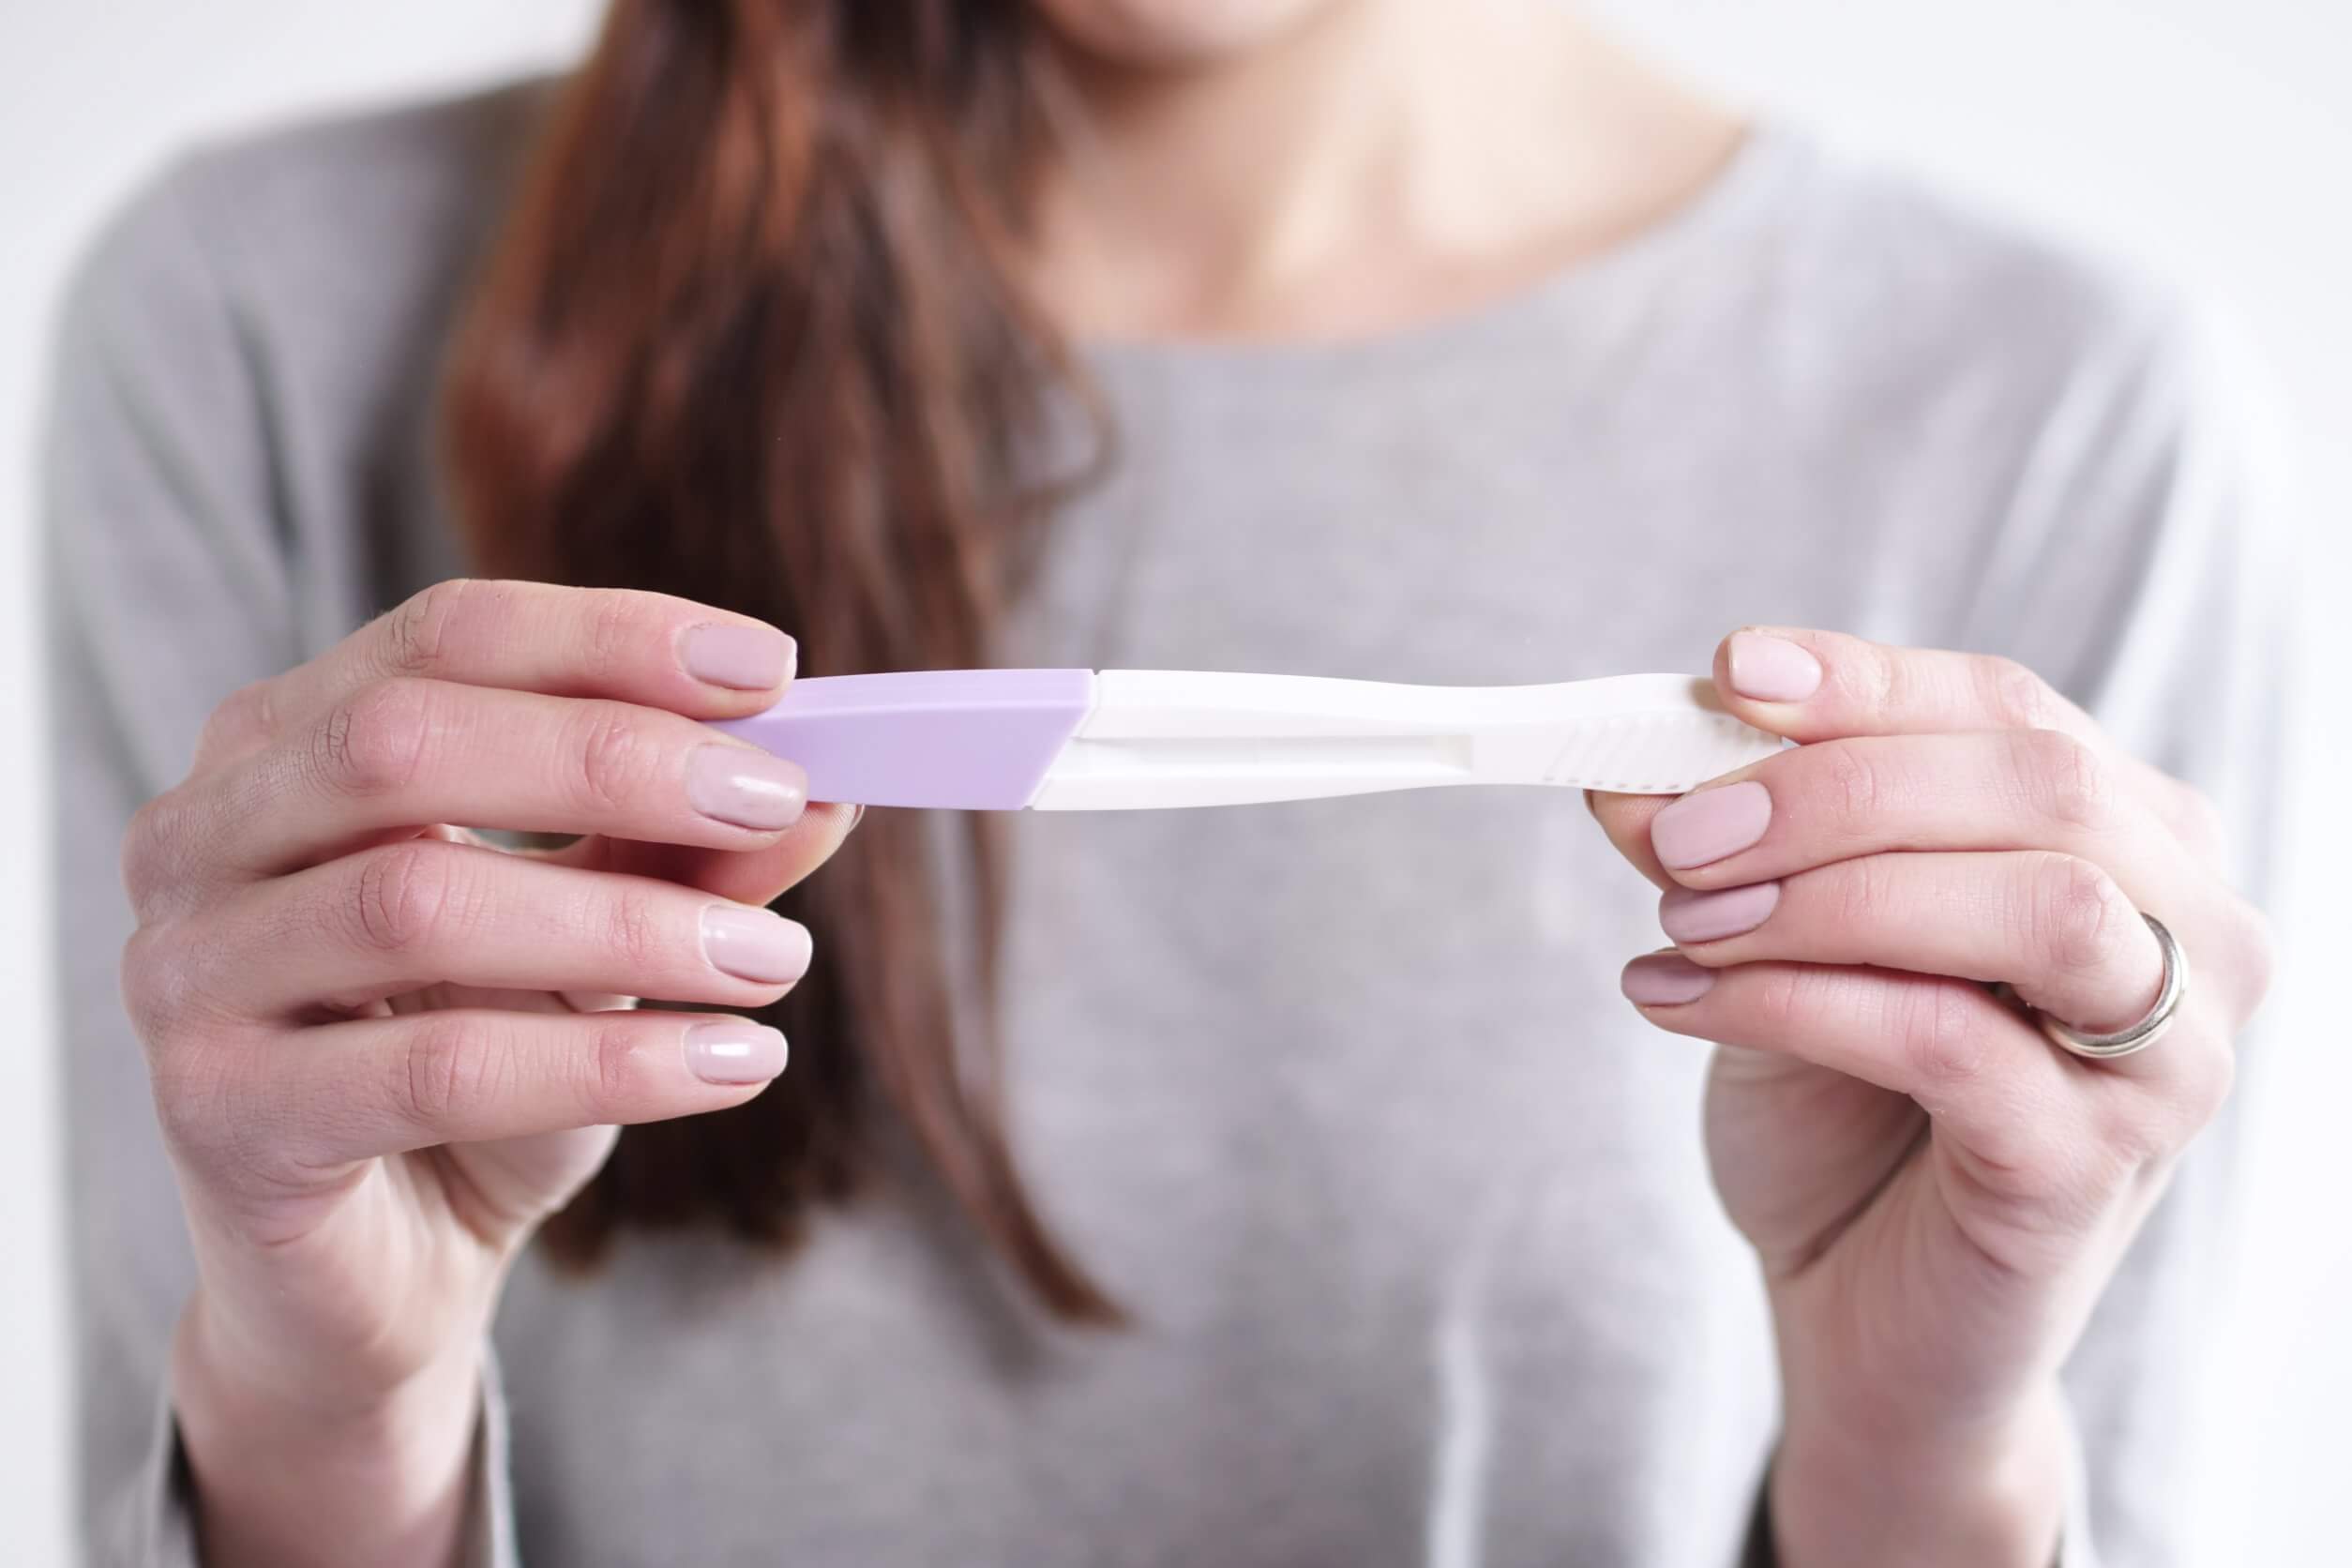 Test de grossesse pour confirmer le transfert d'embryon.